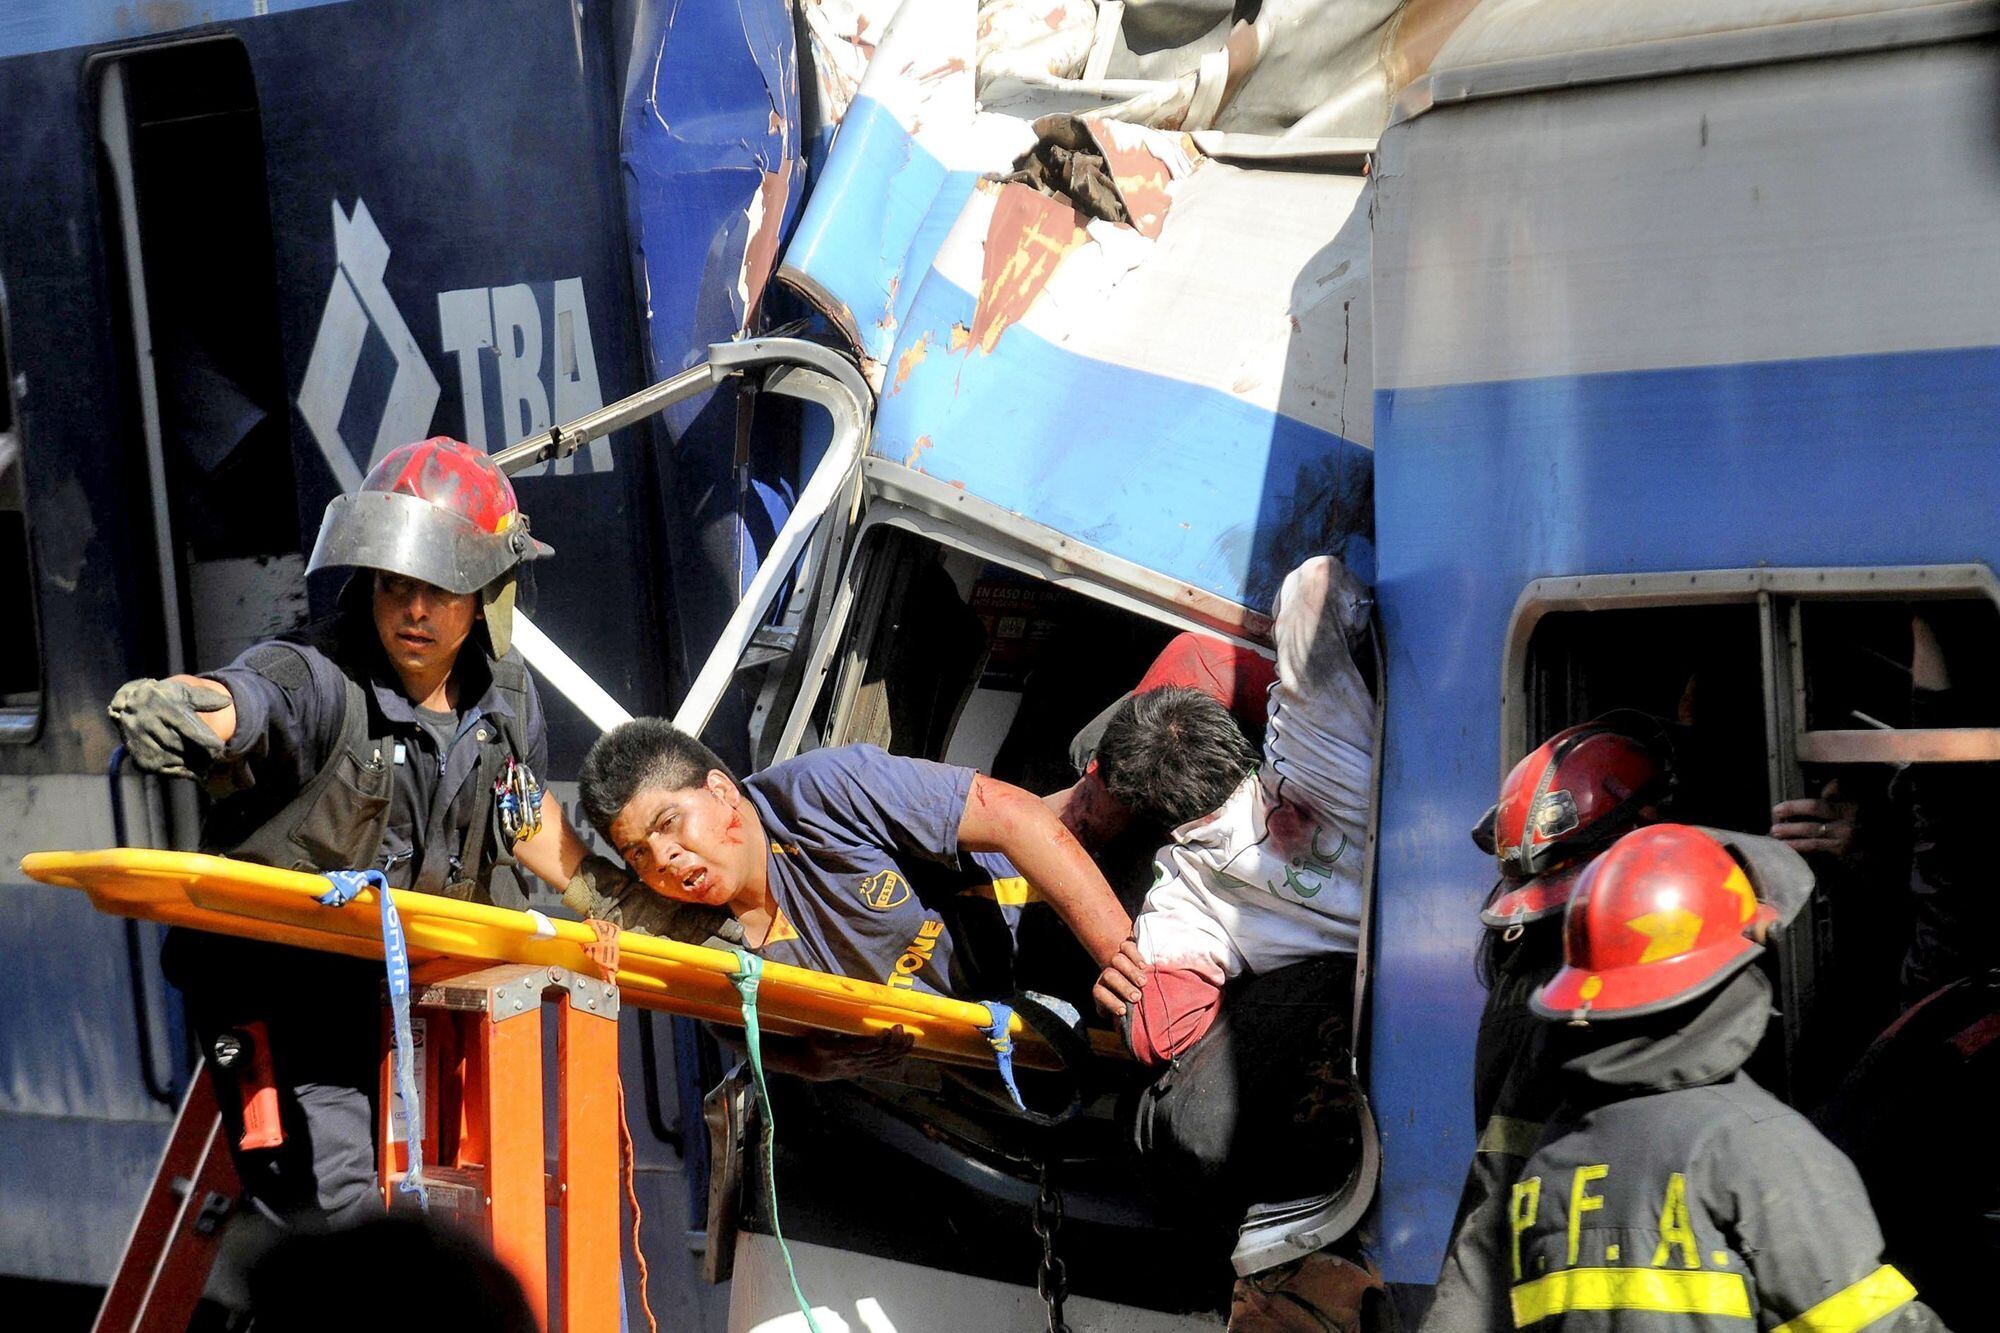 La mañana del 22 de febrero de 2012 no fue una más para la Argentina: en la estación de Once, en el corazón de Buenos Aires, 52 personas perdieron la vida y 789 sufrieron heridas, algunas gravísimas, en un hecho que reveló de manera brutal que la corrupción mata